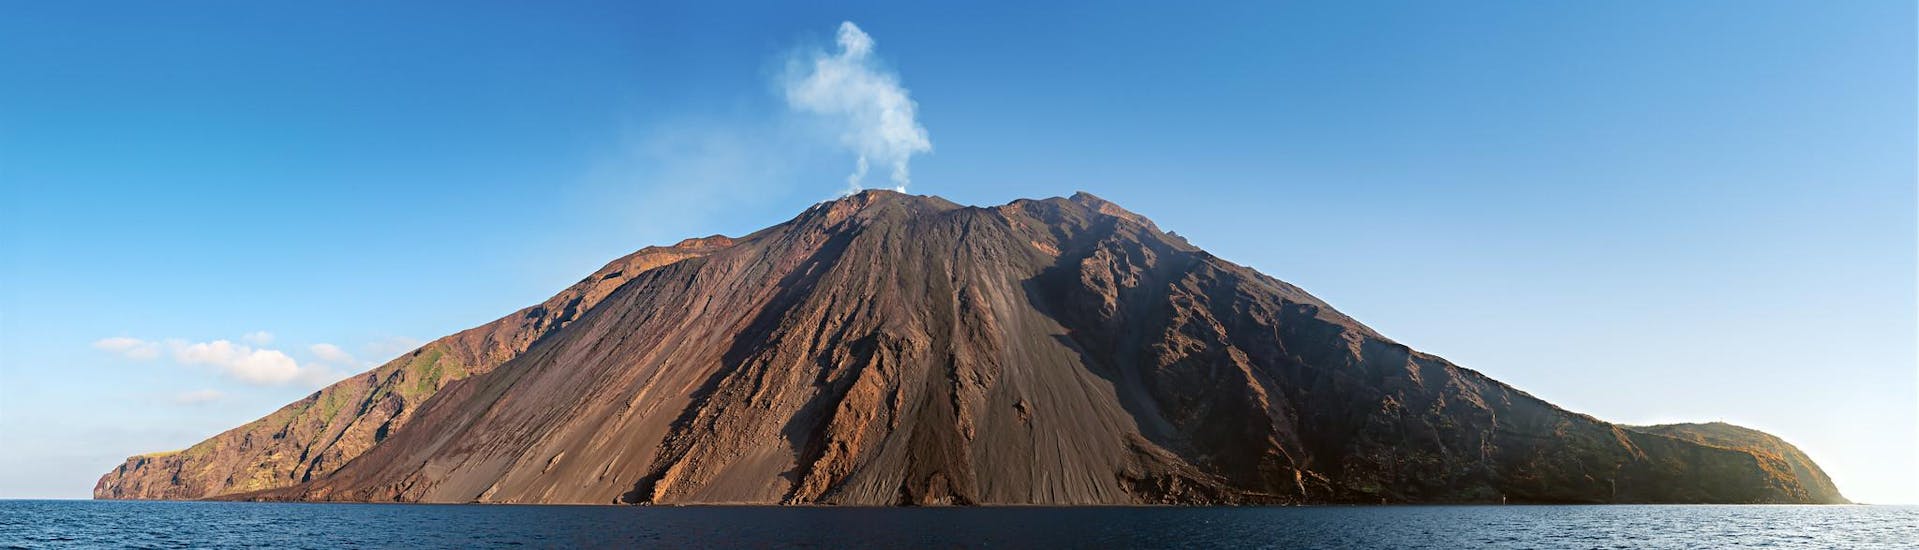 Macht eine Vulkantour oder wandert auf den Gipfel eines Vulkans